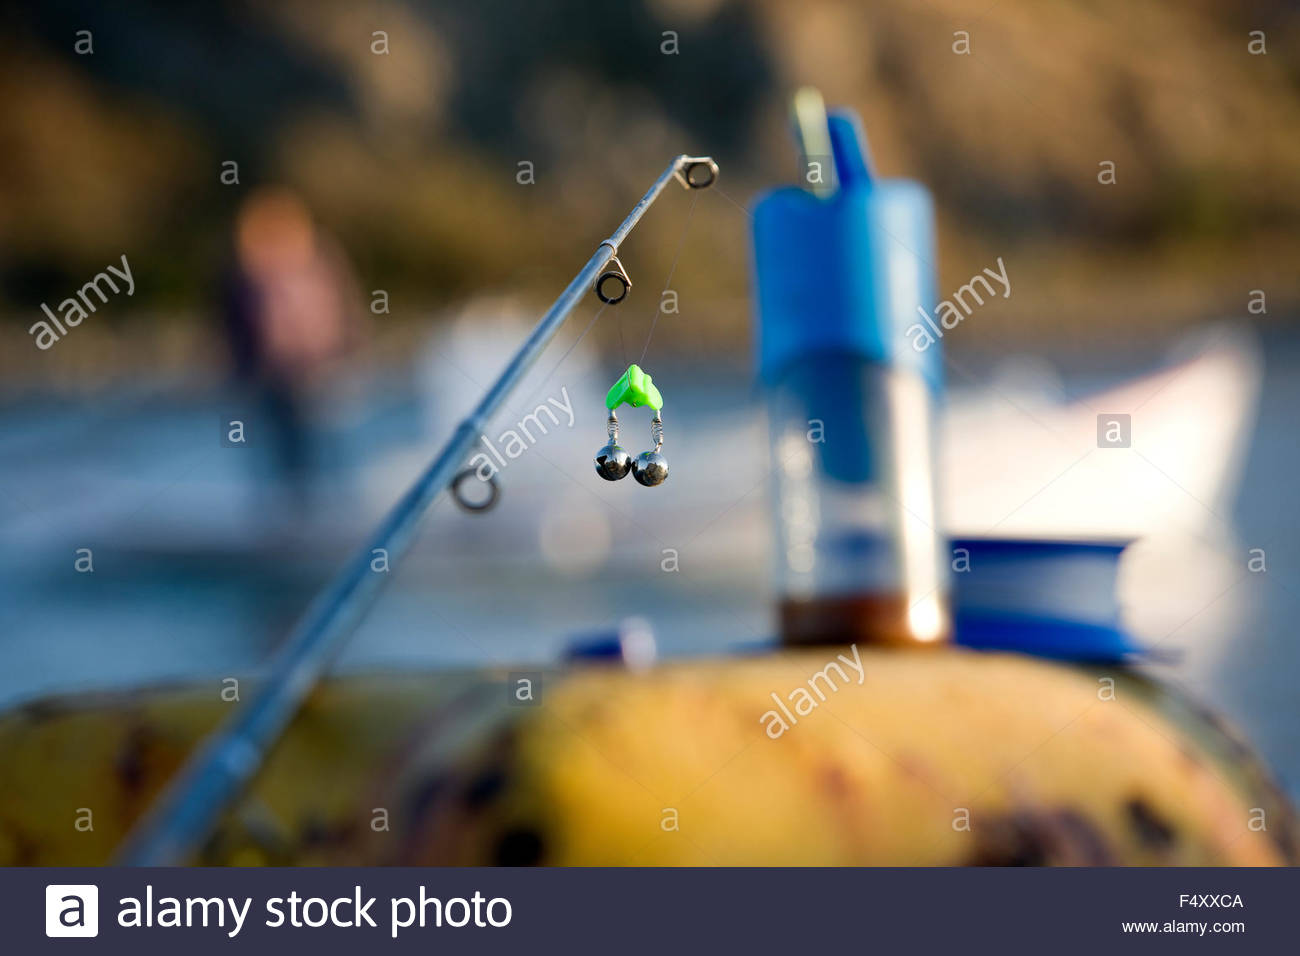 fishing line alert.jpg